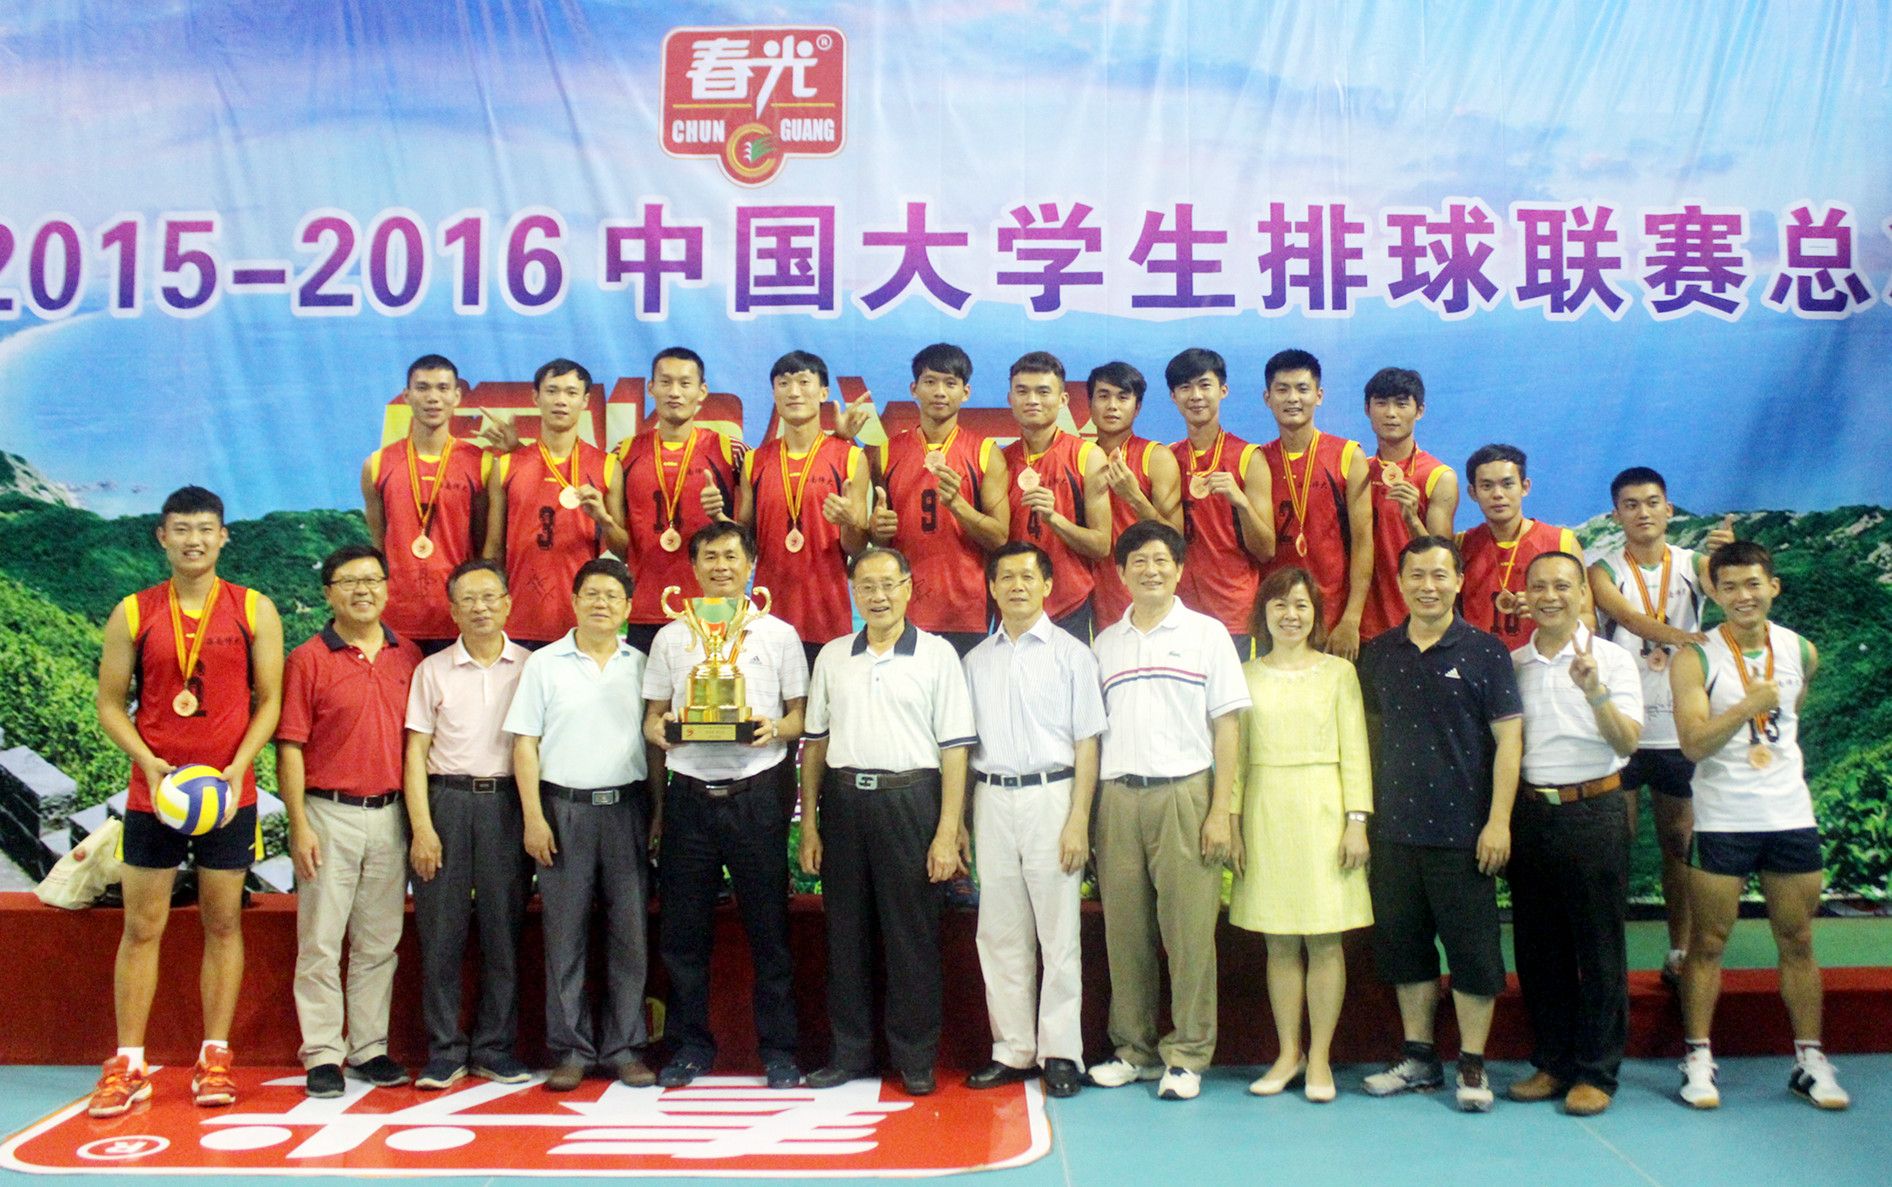 我校男排获2015-2016中国大学生排球联赛季军